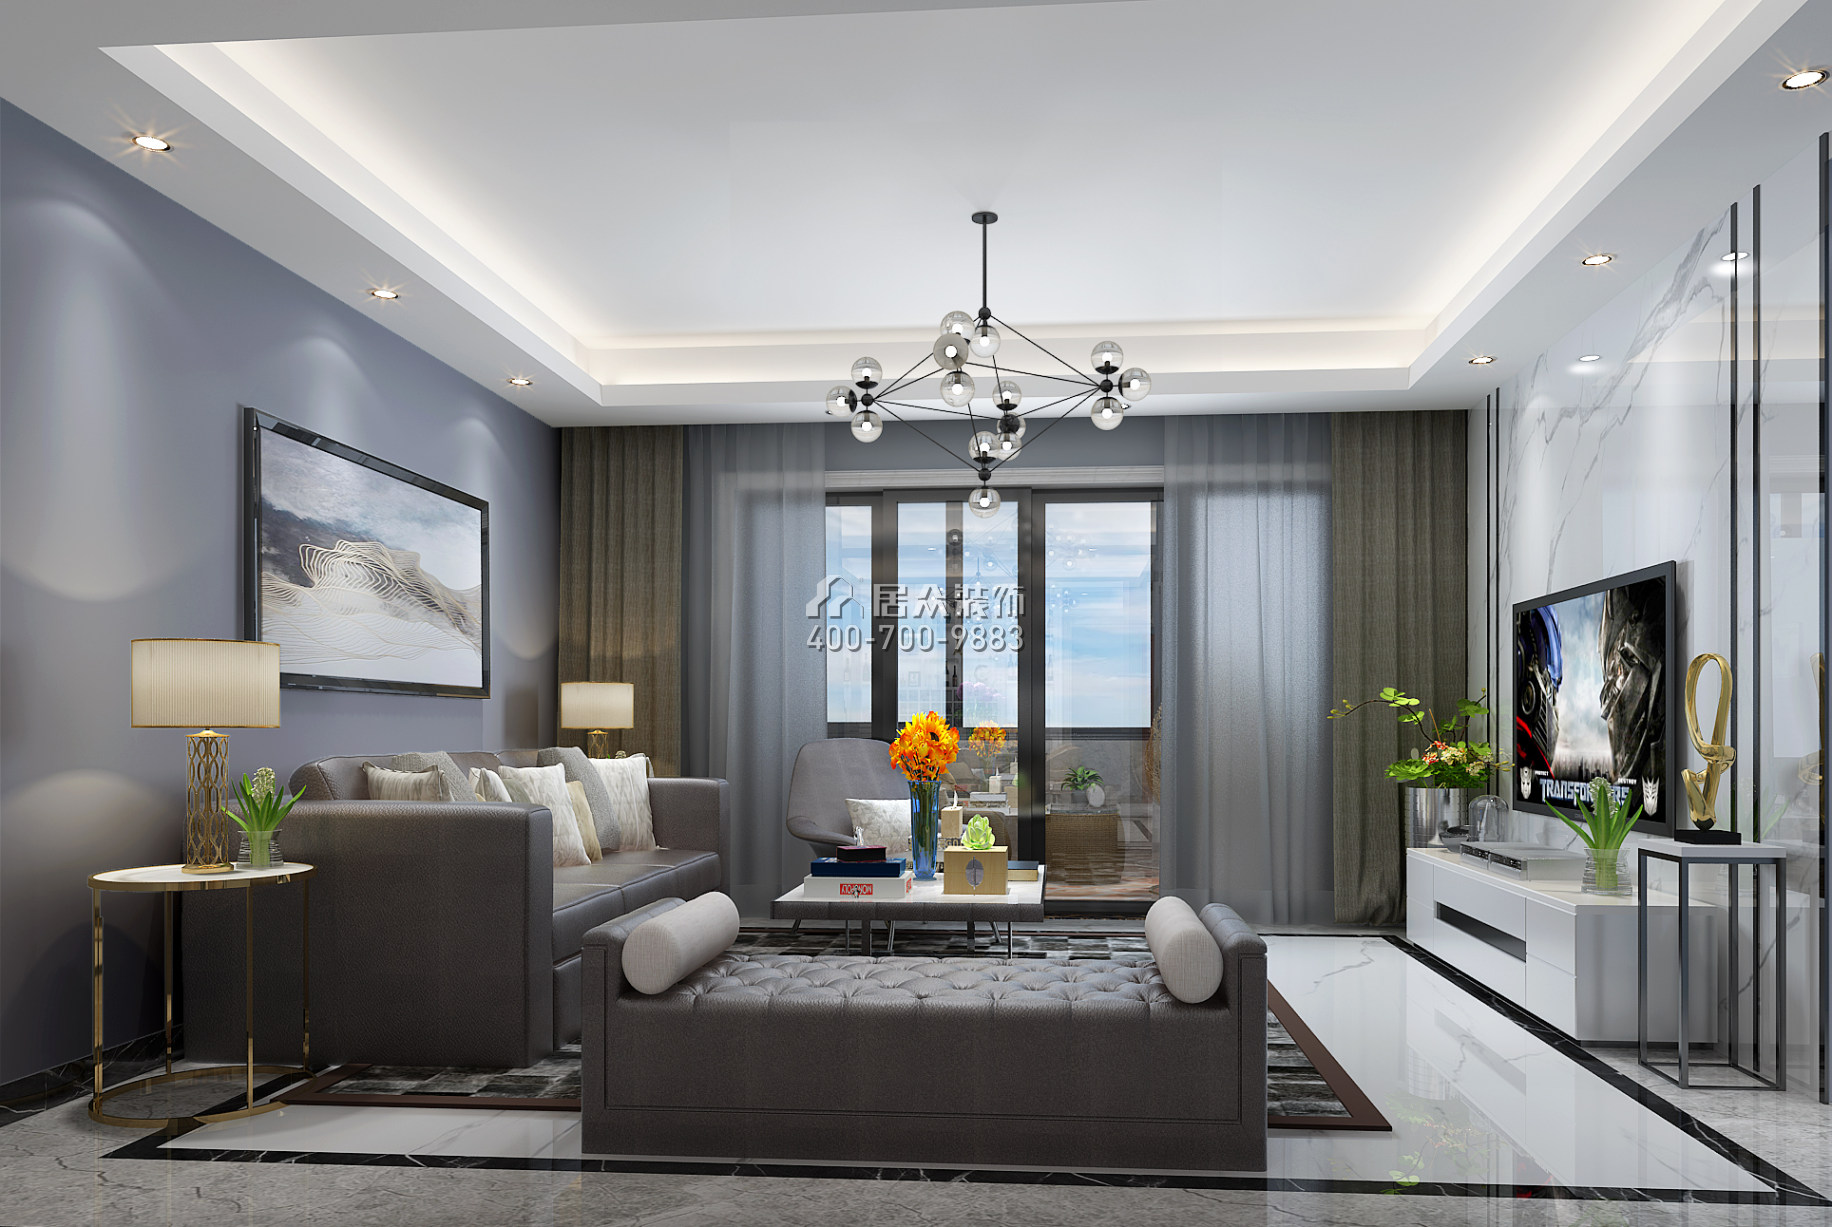 維港半島142平方米現代簡約風格平層戶型客廳裝修效果圖